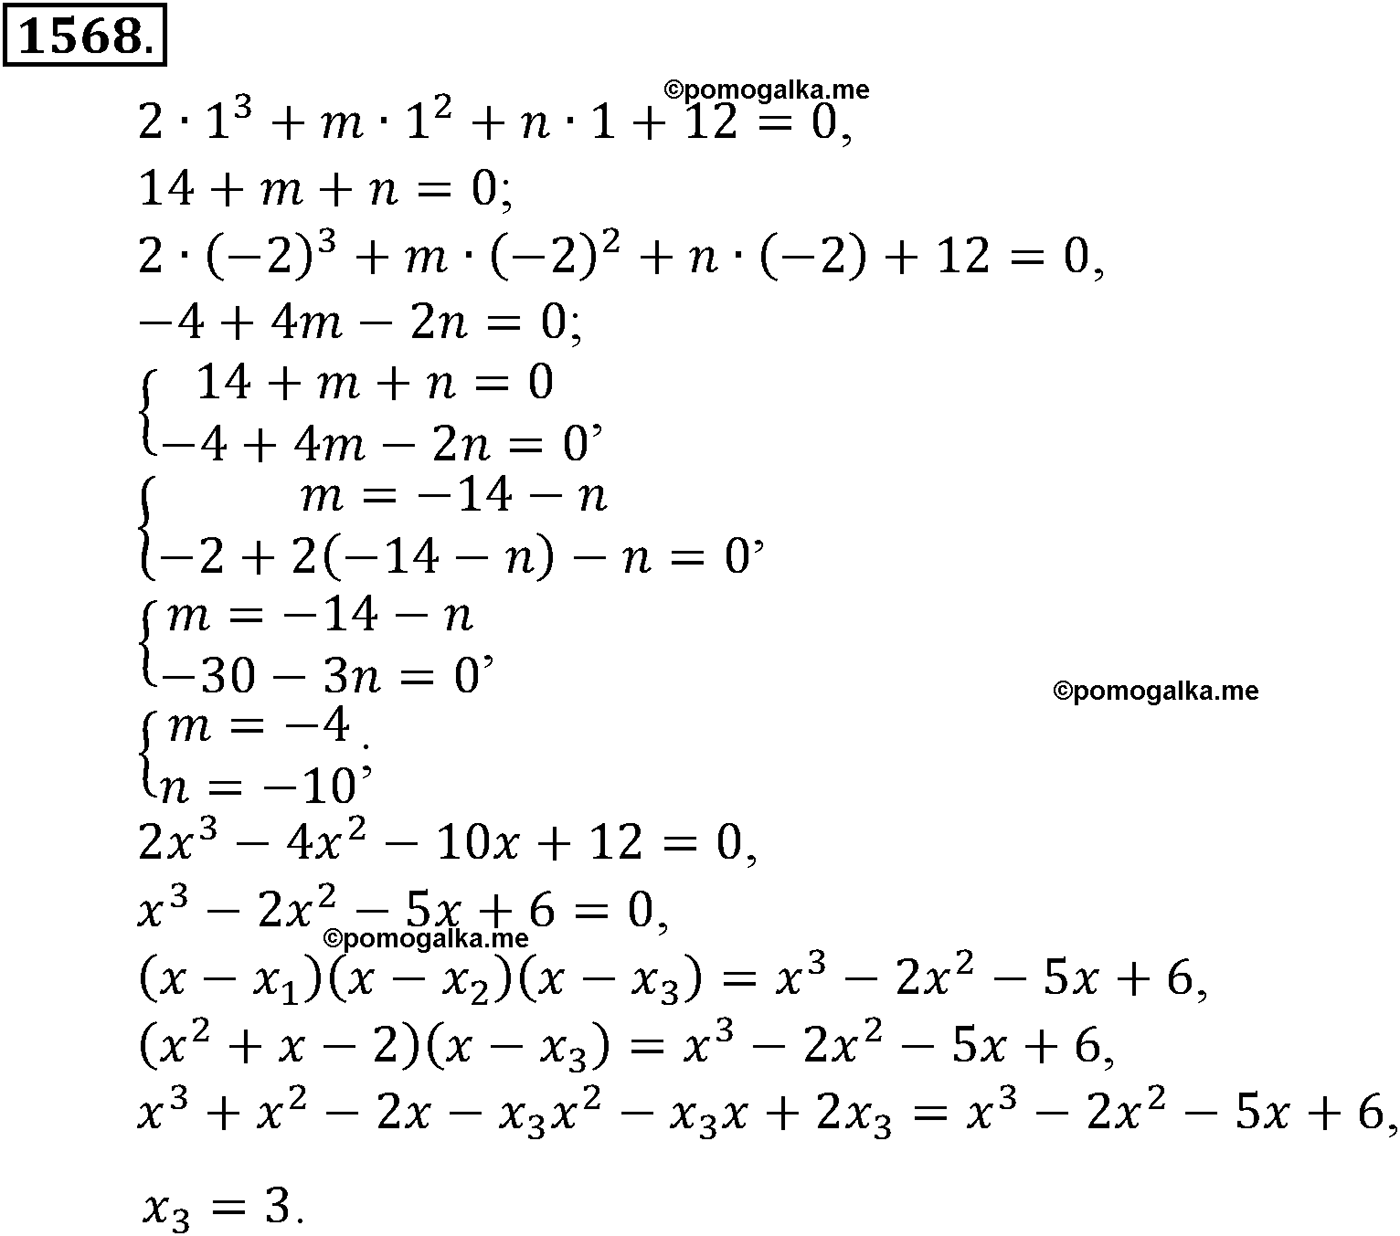 разбор задачи №1568 по алгебре за 10-11 класс из учебника Алимова, Колягина